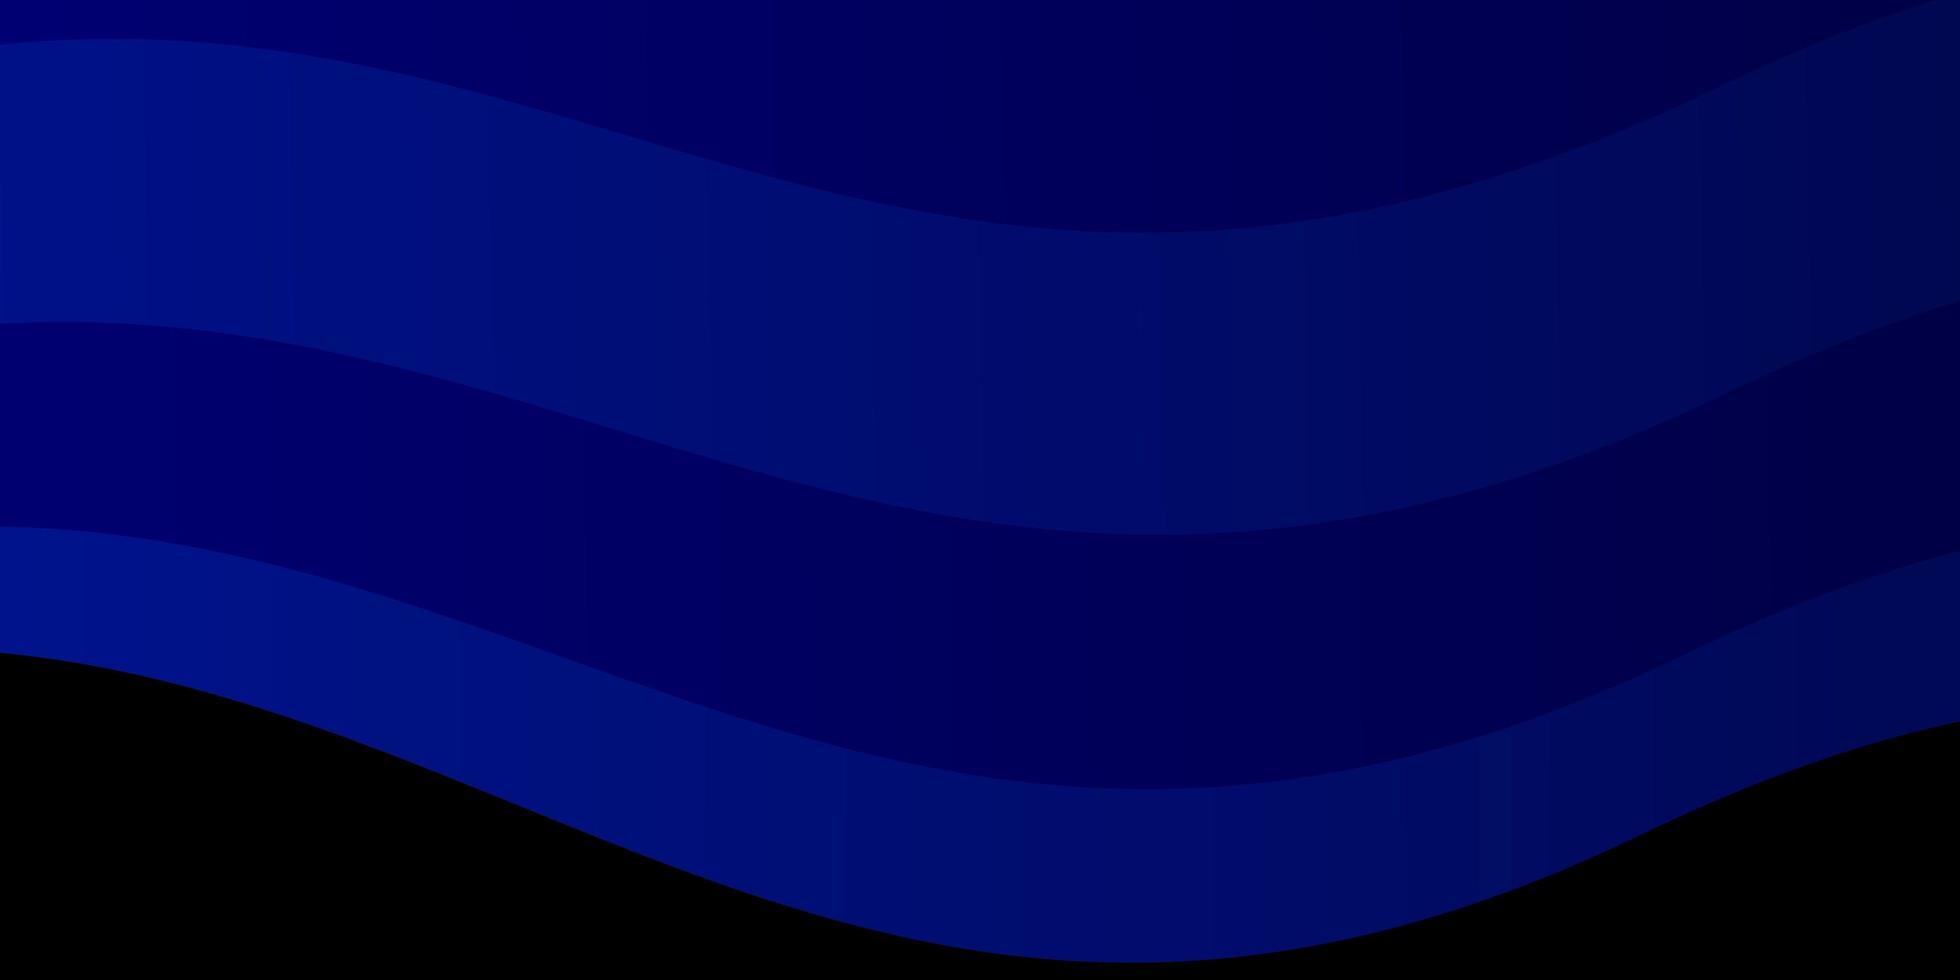 toile de fond vecteur bleu rose foncé avec des lignes pliées illustration abstraite colorée avec modèle de courbes dégradées pour téléphones portables